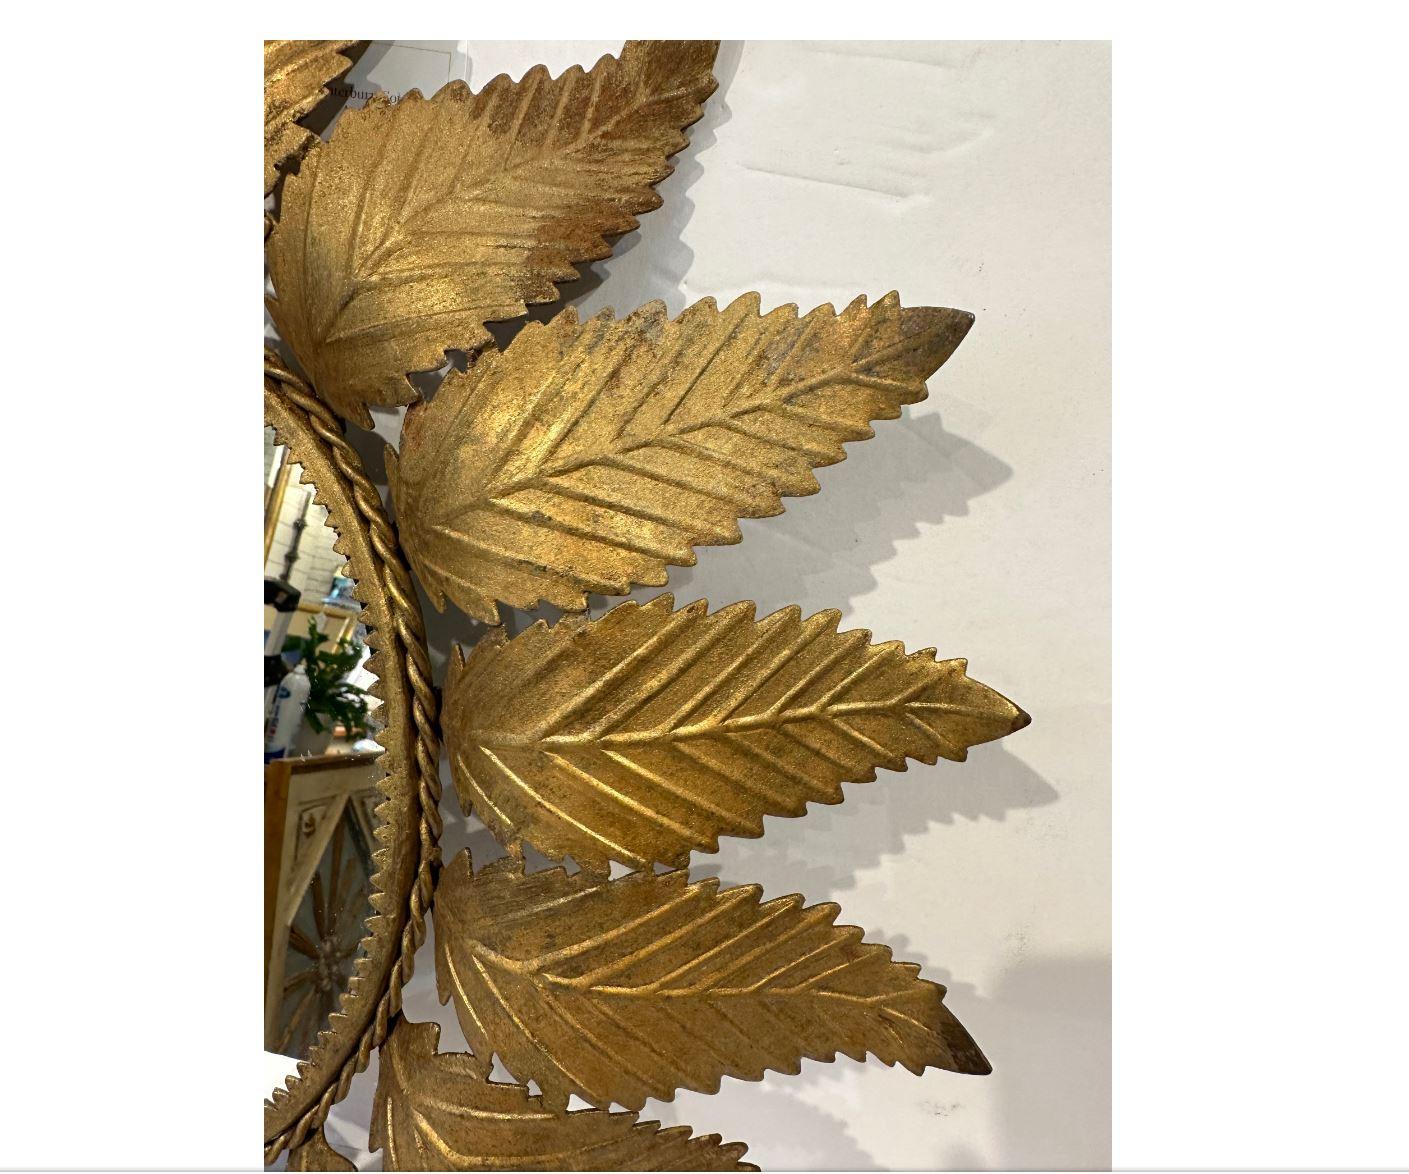 Dies ist eine schöne 19. Jahrhundert Sunburst Spiegel! Die Toleware-Blätter weisen schöne, komplizierte Details auf. Der Spiegel ist mit einem gedrehten Goldseil umrandet, das mit einer symmetrischen Dreiecksumrandung kombiniert ist. Das zarte